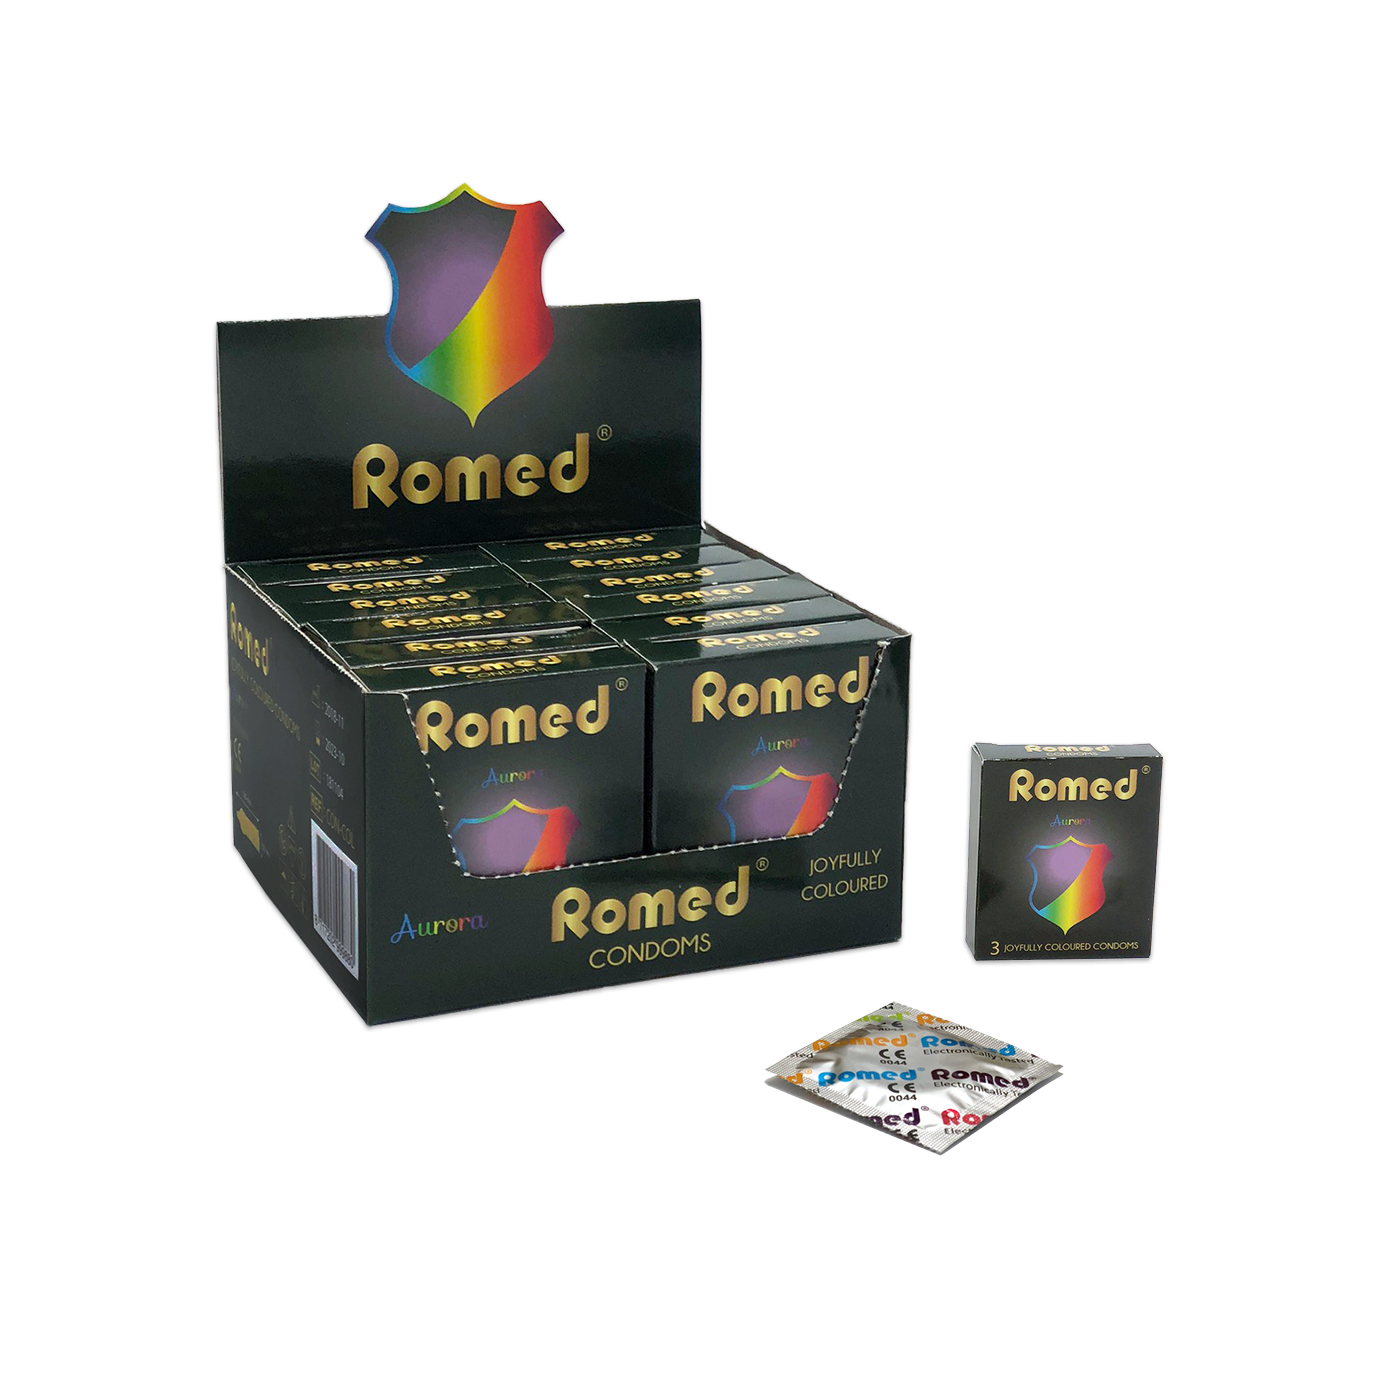 CON-COL Romed condooms gekleurd, verpakt per 3 stuks in een envelopje, in cellofaan, 48 envelopjes van 3 stuks = 144 stuks in binnendoosje (= 1 gros), 30 x 144 stuks = 4.320 stuks in een karton.